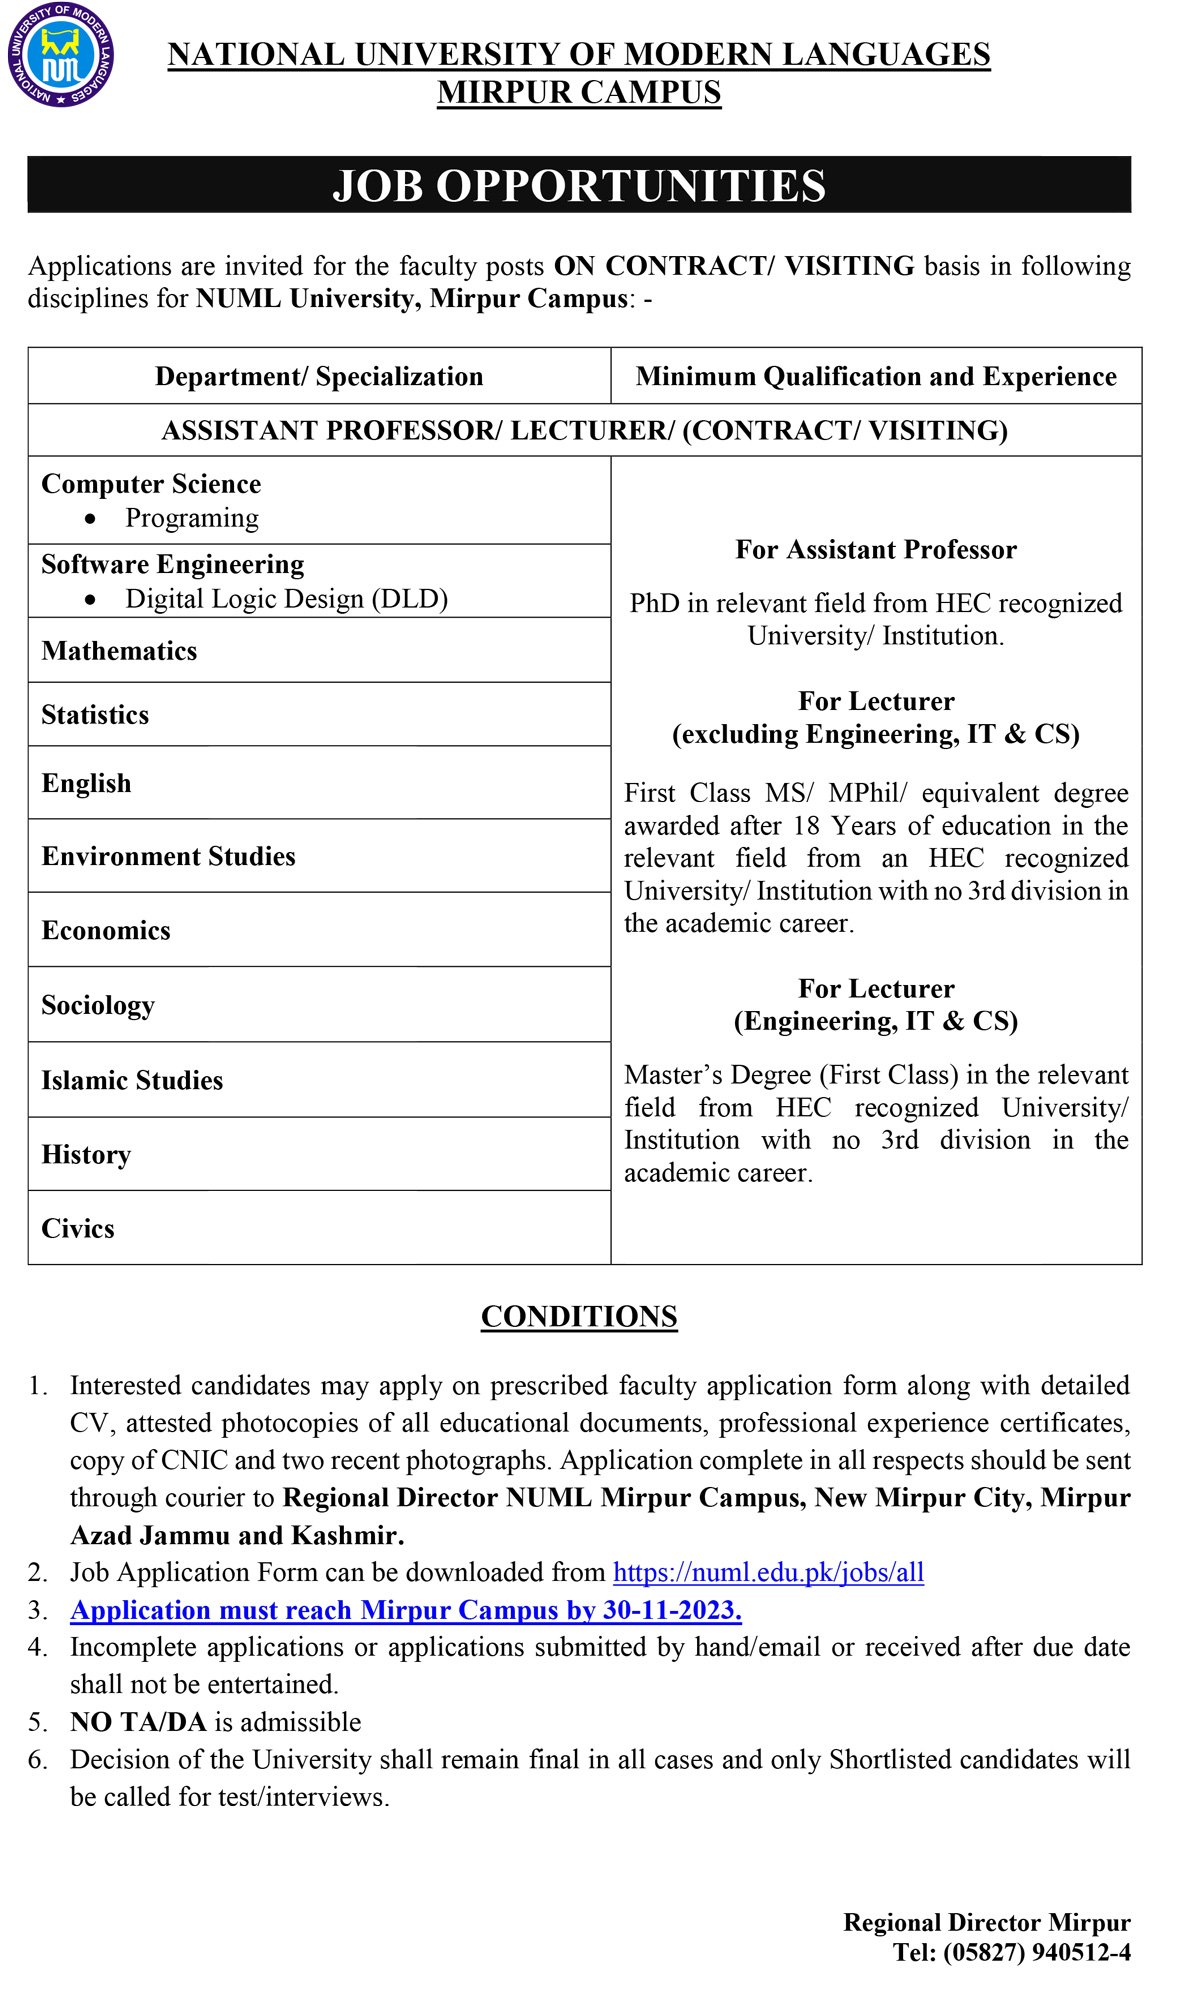 NUML Mirpur Campus Jobs 2023